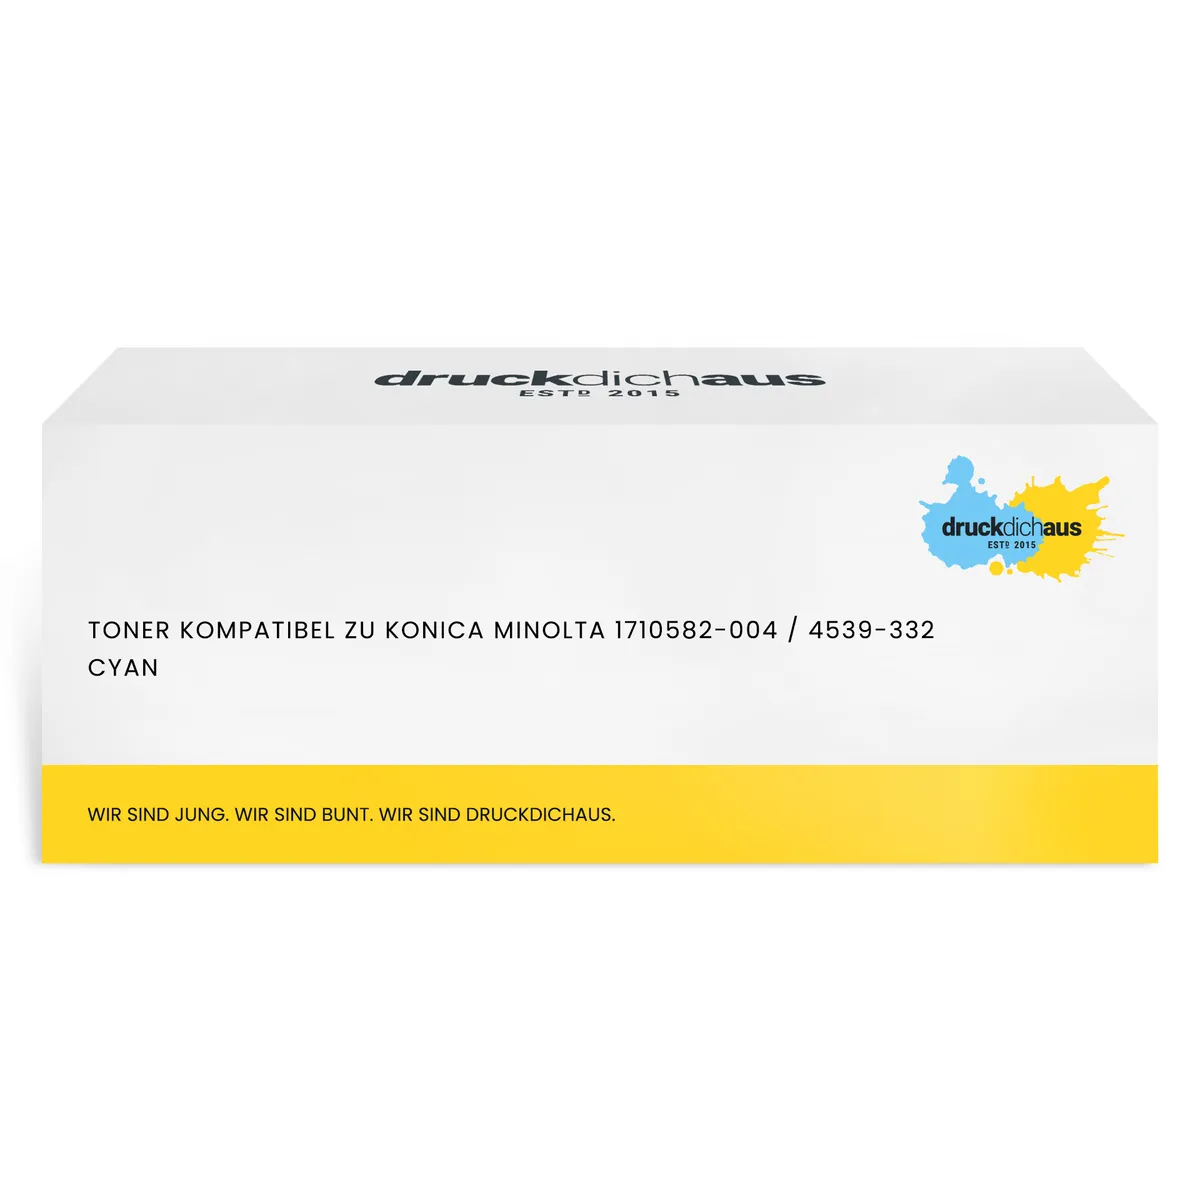 Toner kompatibel zu Konica Minolta 1710582-004 / 4539-332 cyan